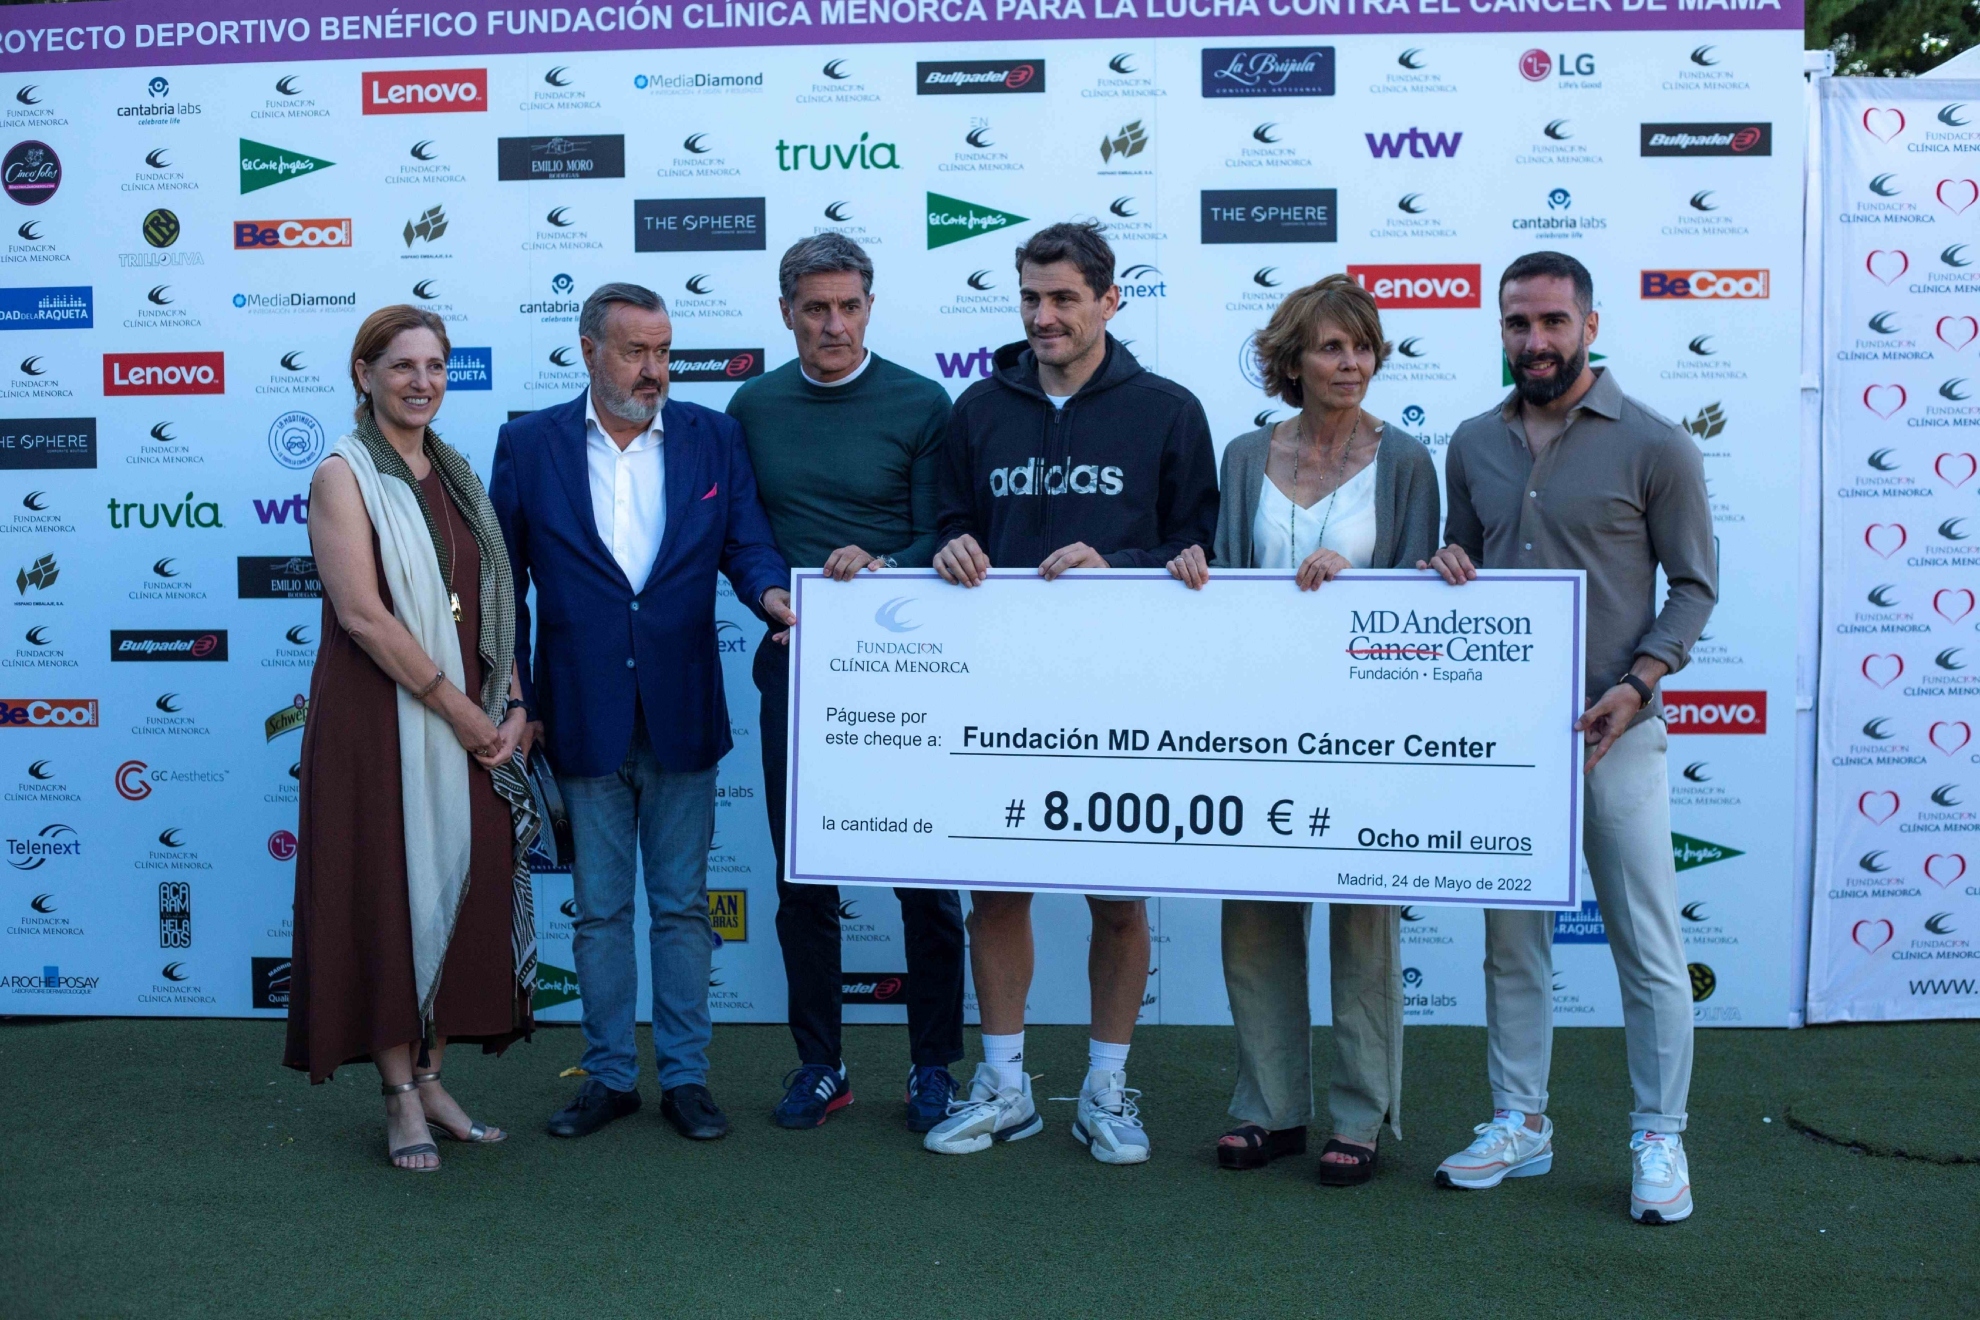 Casillas, Carvajal o Schuster, estrellas del torneo contra el cáncer de mama de la Fundación Clínica Menorca